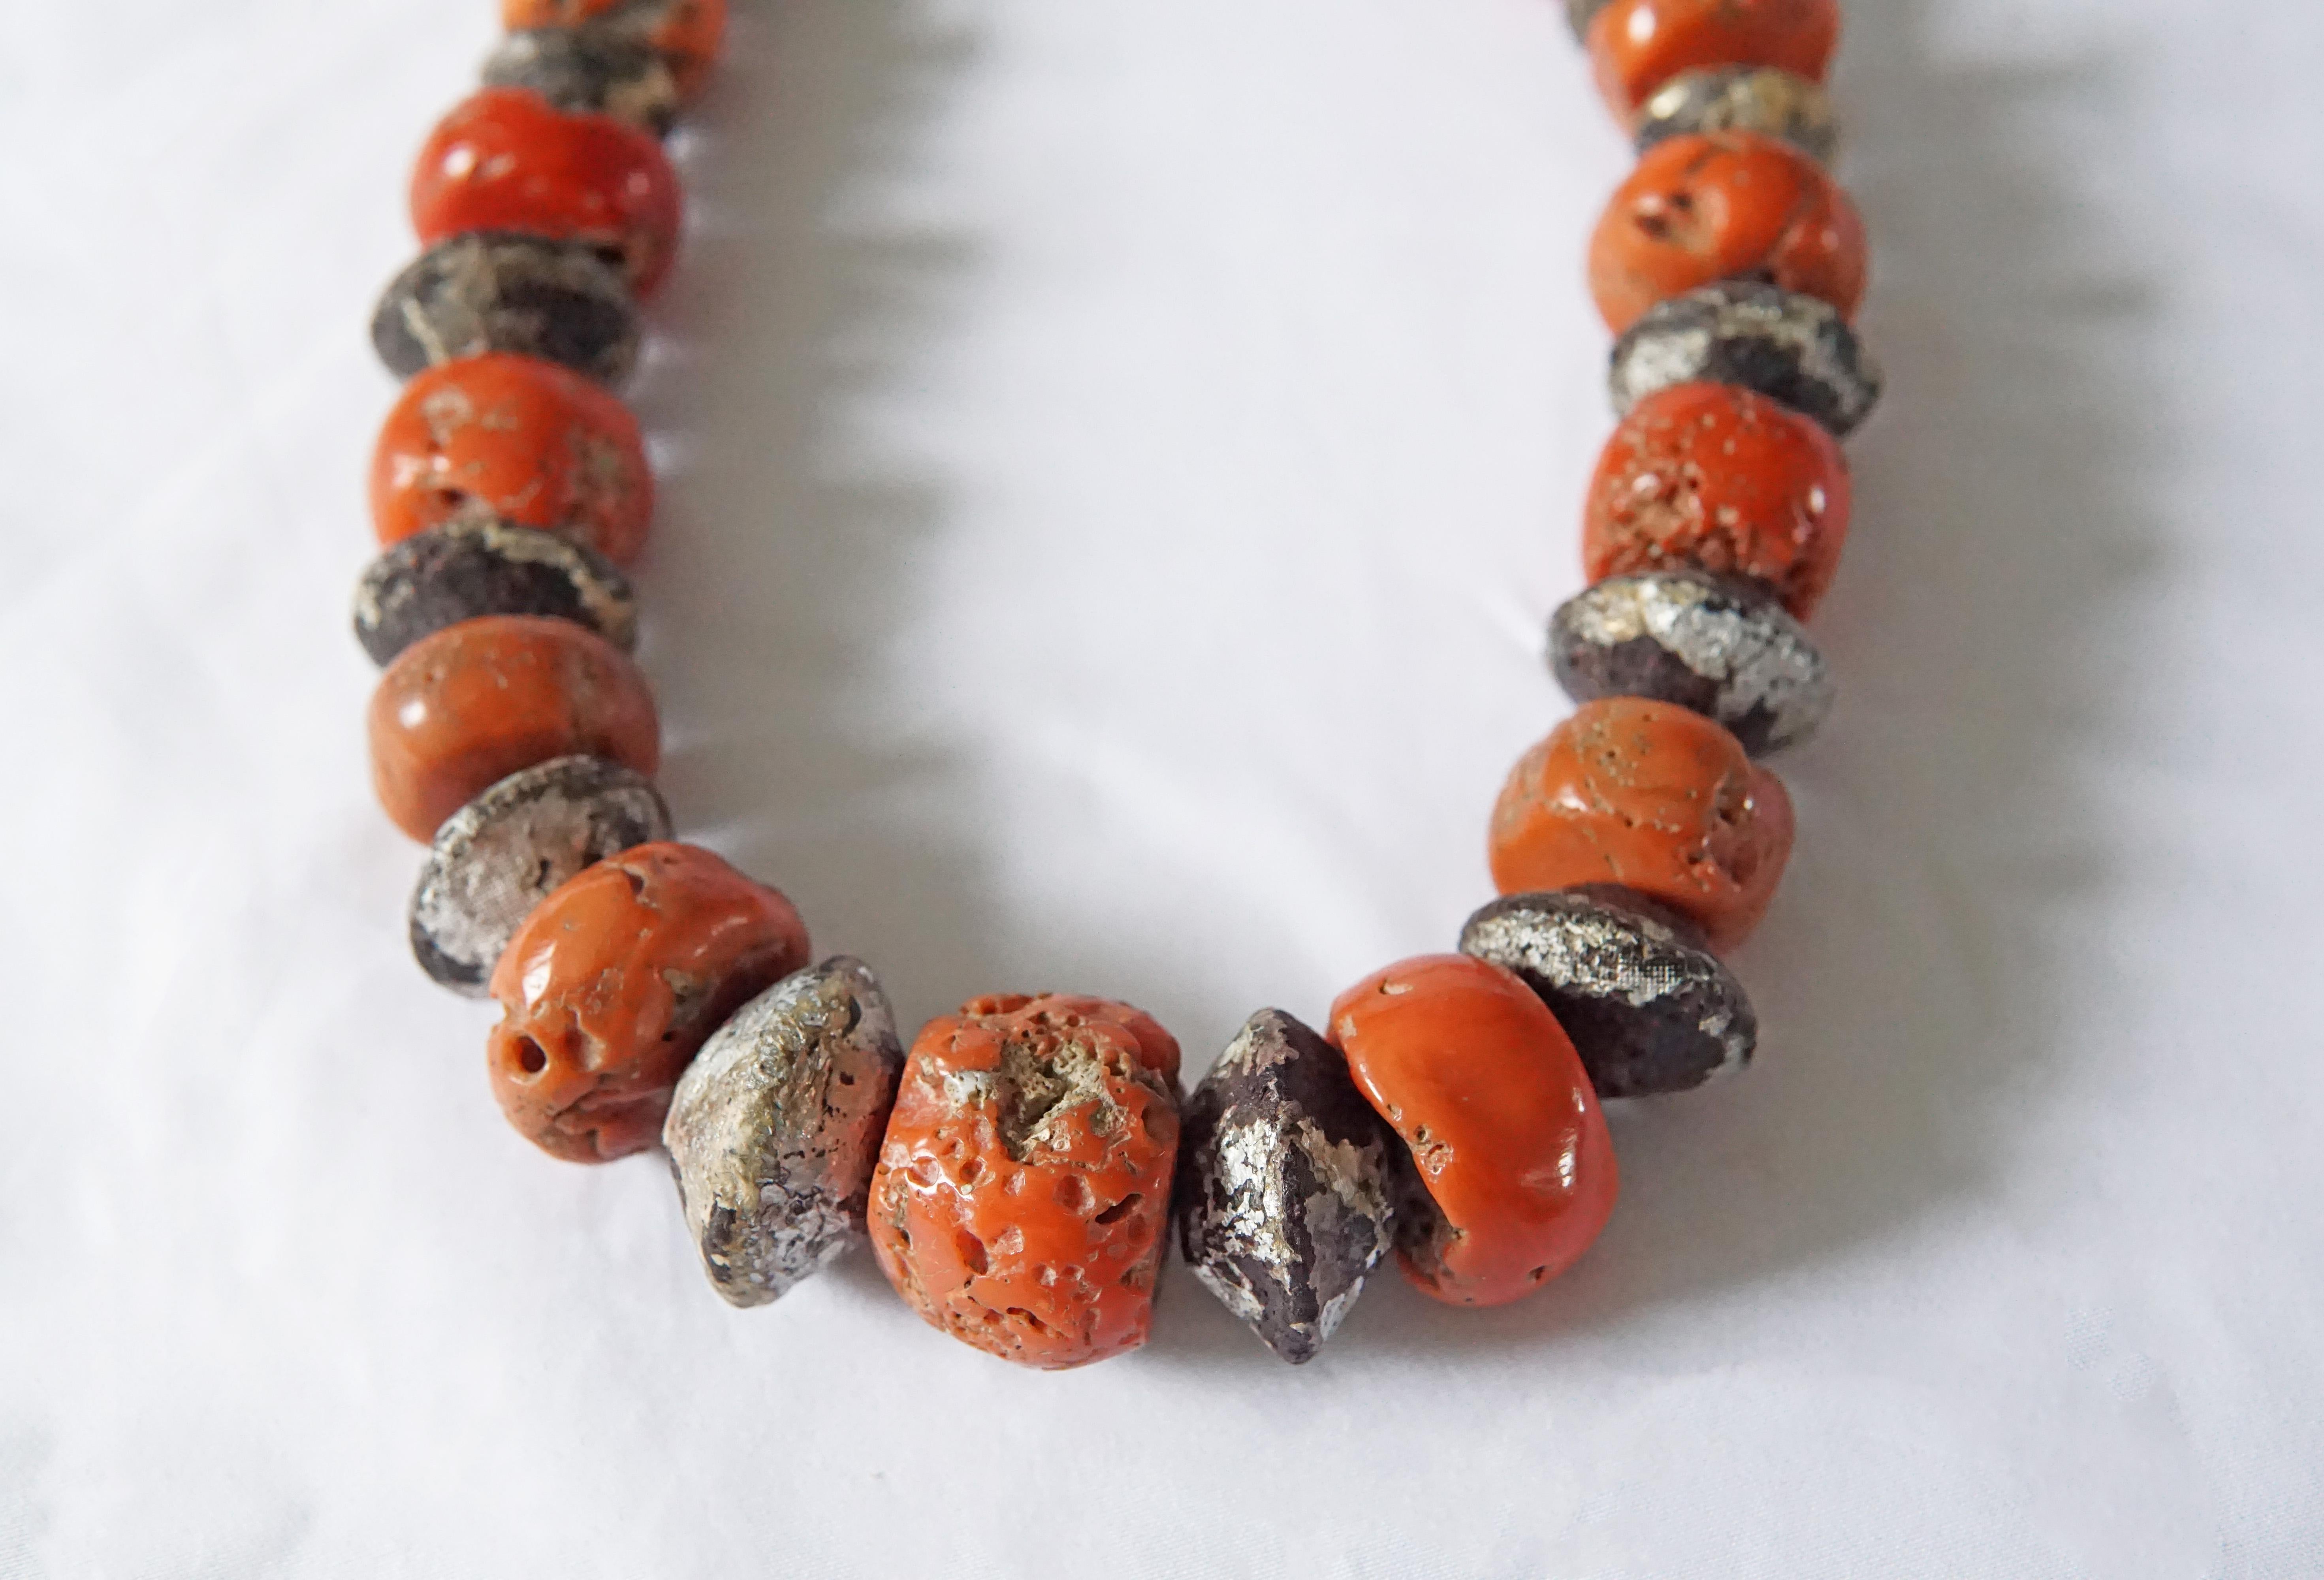 Un merveilleux exemple de mala / collier en perles de corail tibétain avec un mélange étonnant de couleurs orange et rouge qui ont magnifiquement vieilli au fil des décennies. Les Tibétains croient que le corail détient un grand pouvoir pour celui